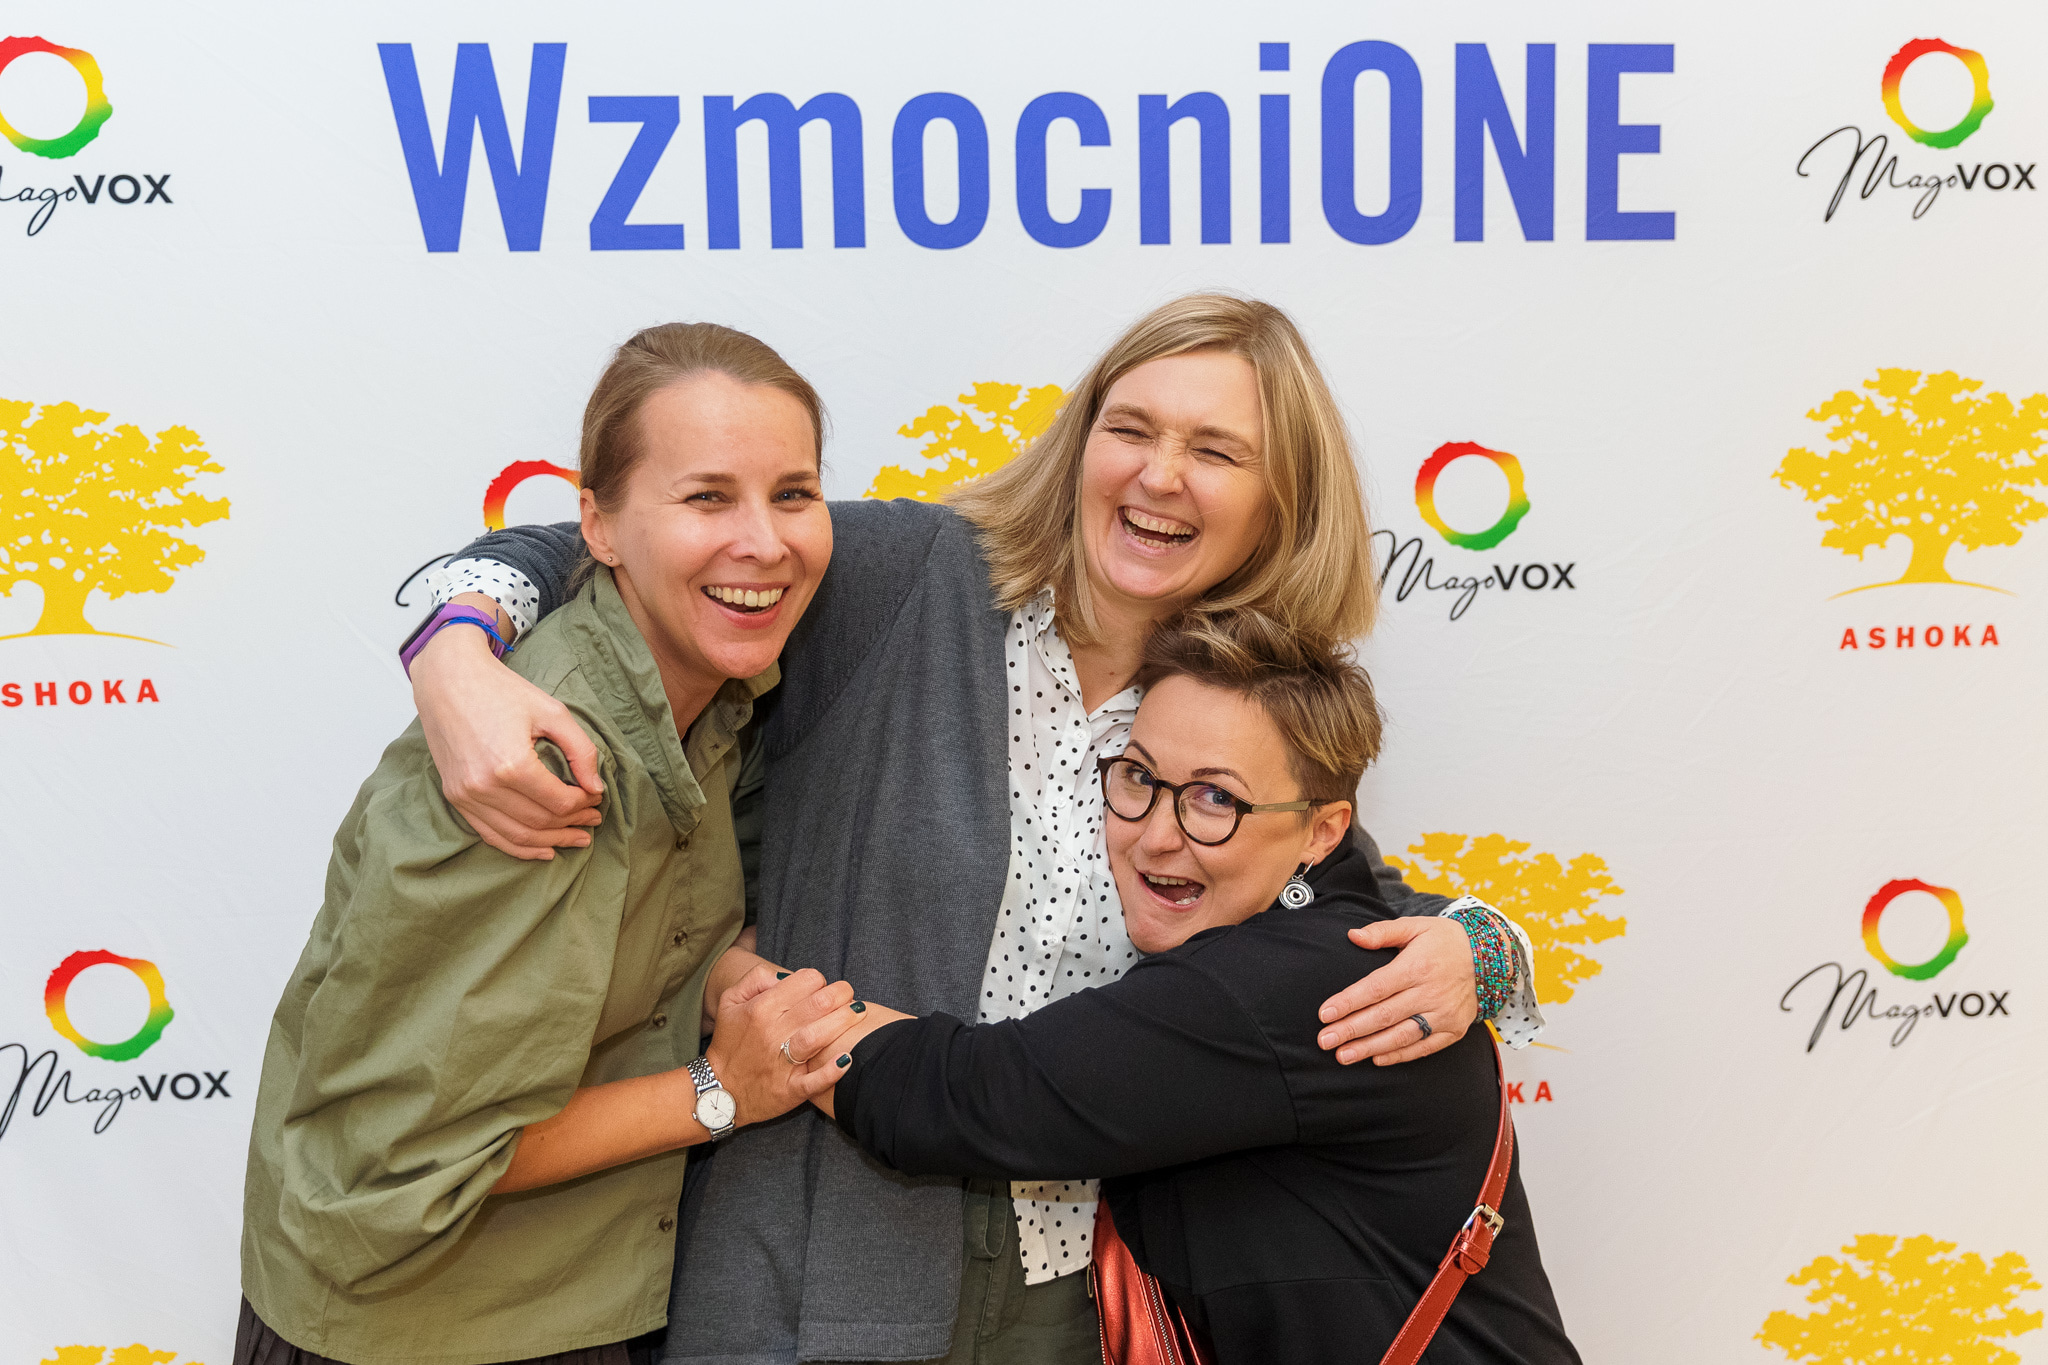 Zdjęcie przedstawia 3 członkinie Fundacji im. Julii Woykowskiej pozujące na białej ściance zdjęciowej z fioletowym napisem "WzmocniONE" na ich głowami oraz kolorowymi logami Ashoki i MagoVoxu. Kobiety przytulają się, śmieją się, jedna robi śmieszną wykrzywioną minę.